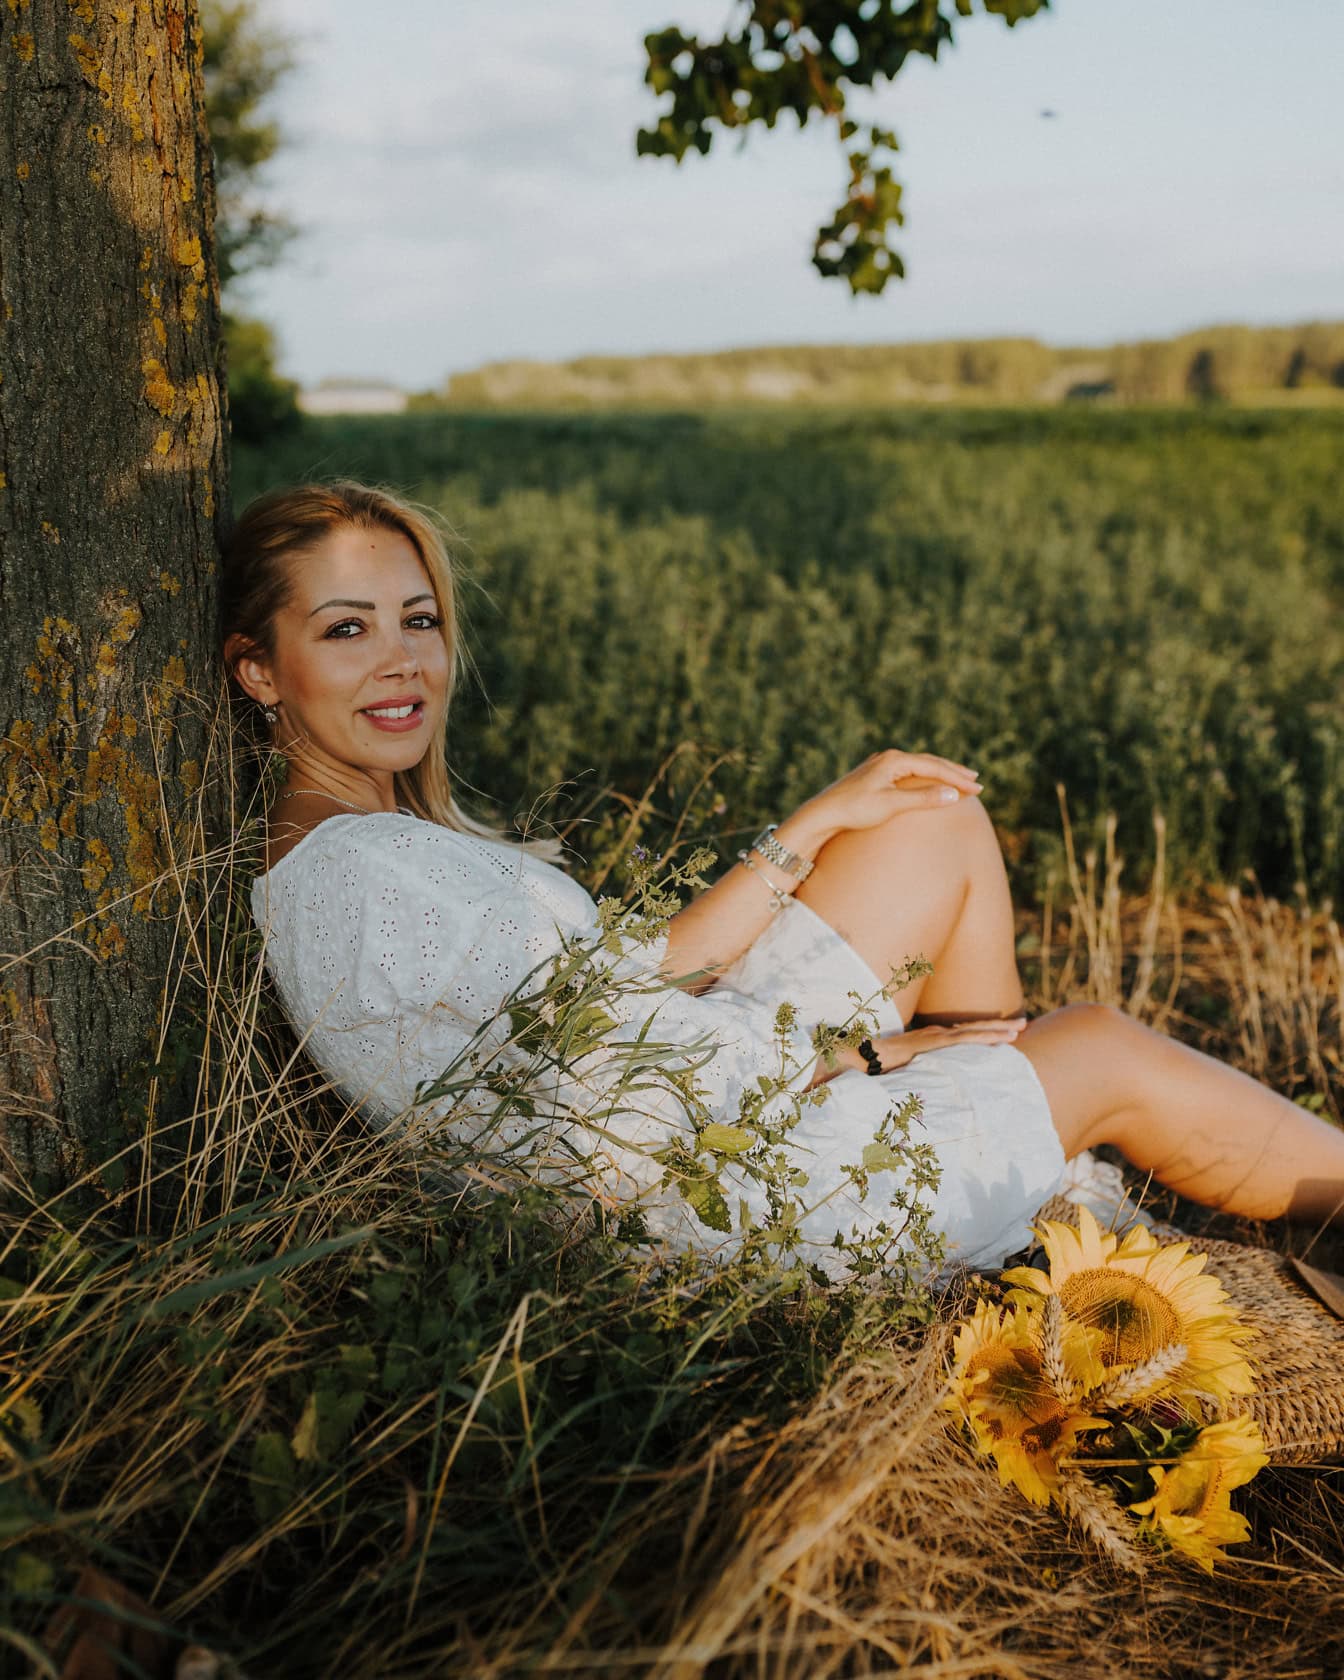 Chân dung của một cô gái tóc vàng xinh đẹp tuyệt đẹp ngồi trên đồng cỏ dưới gốc cây